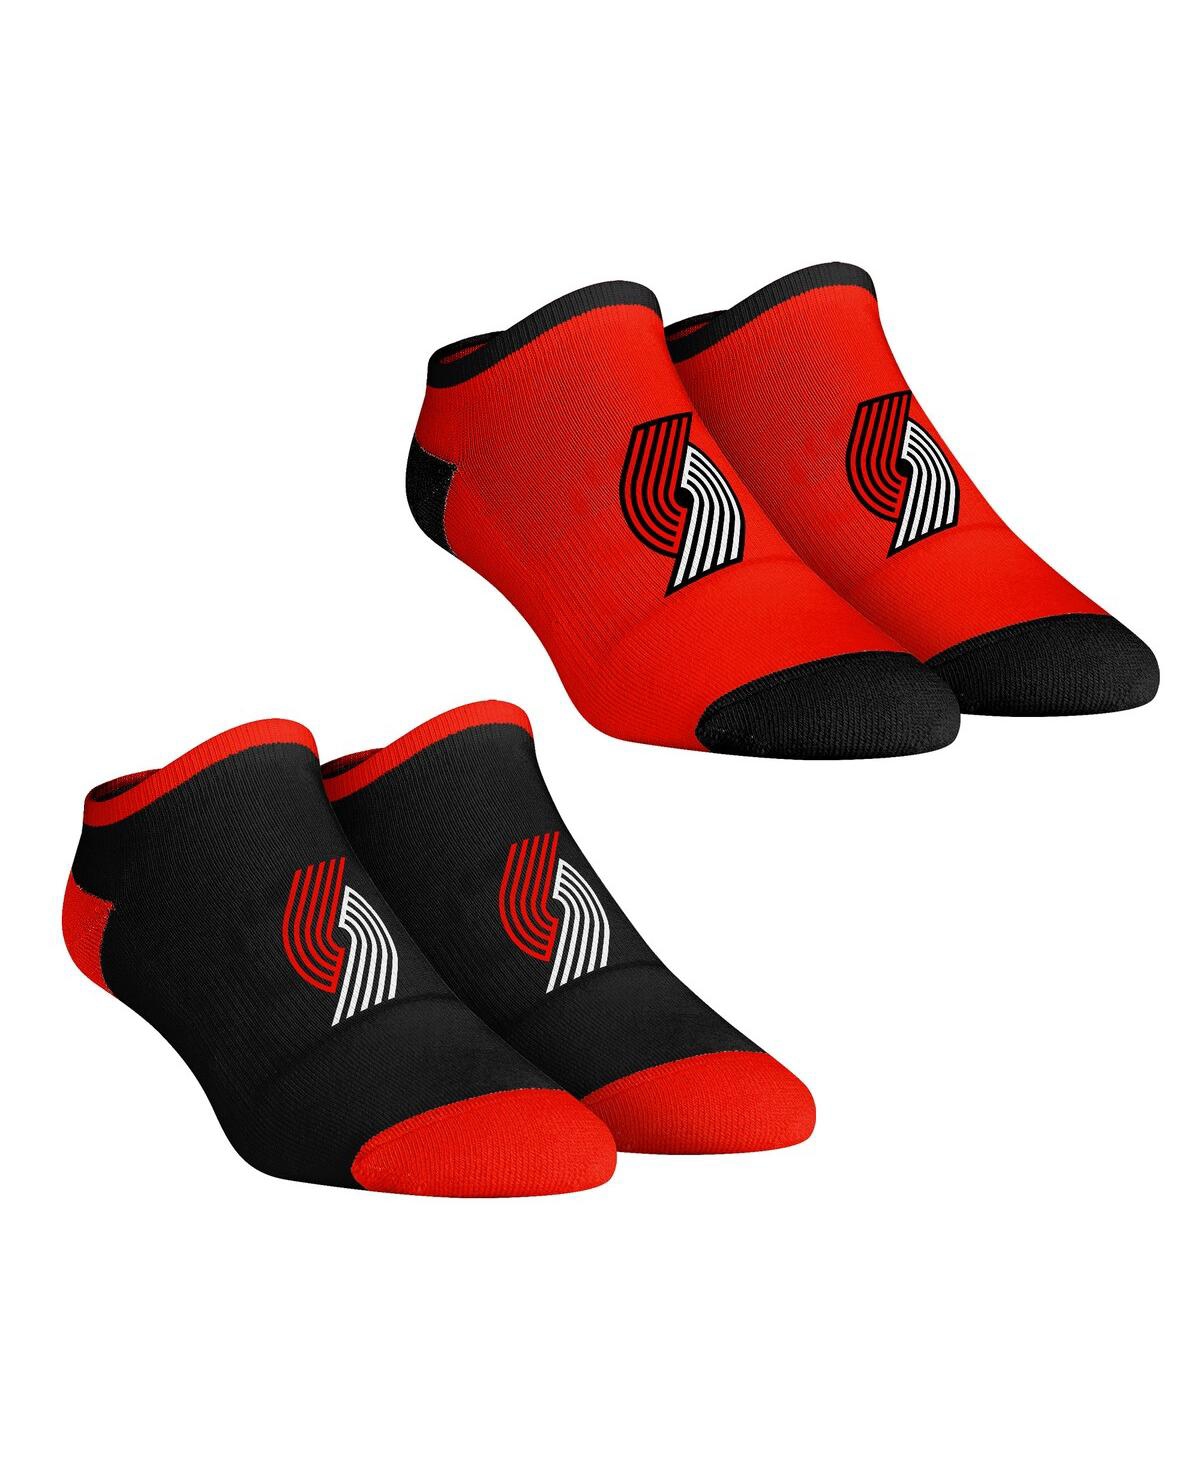 Rock 'em Women's  Socks Portland Trail Blazers Core Team 2-pack Low Cut Ankle Sock Set In Black,red